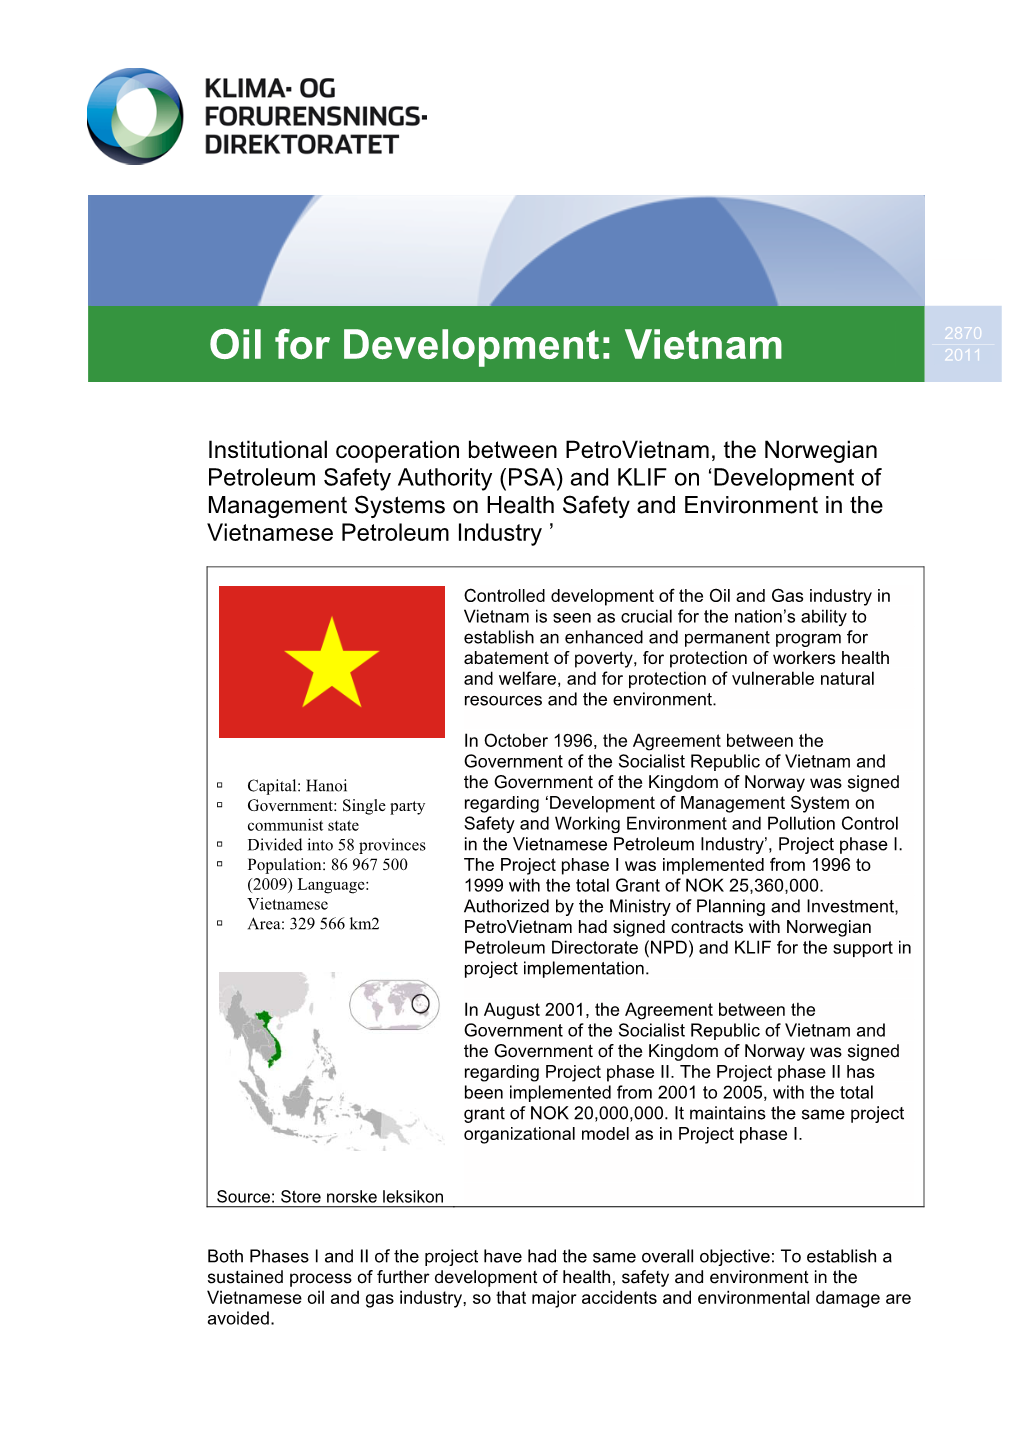 Oil for Development: Vietnam 2011